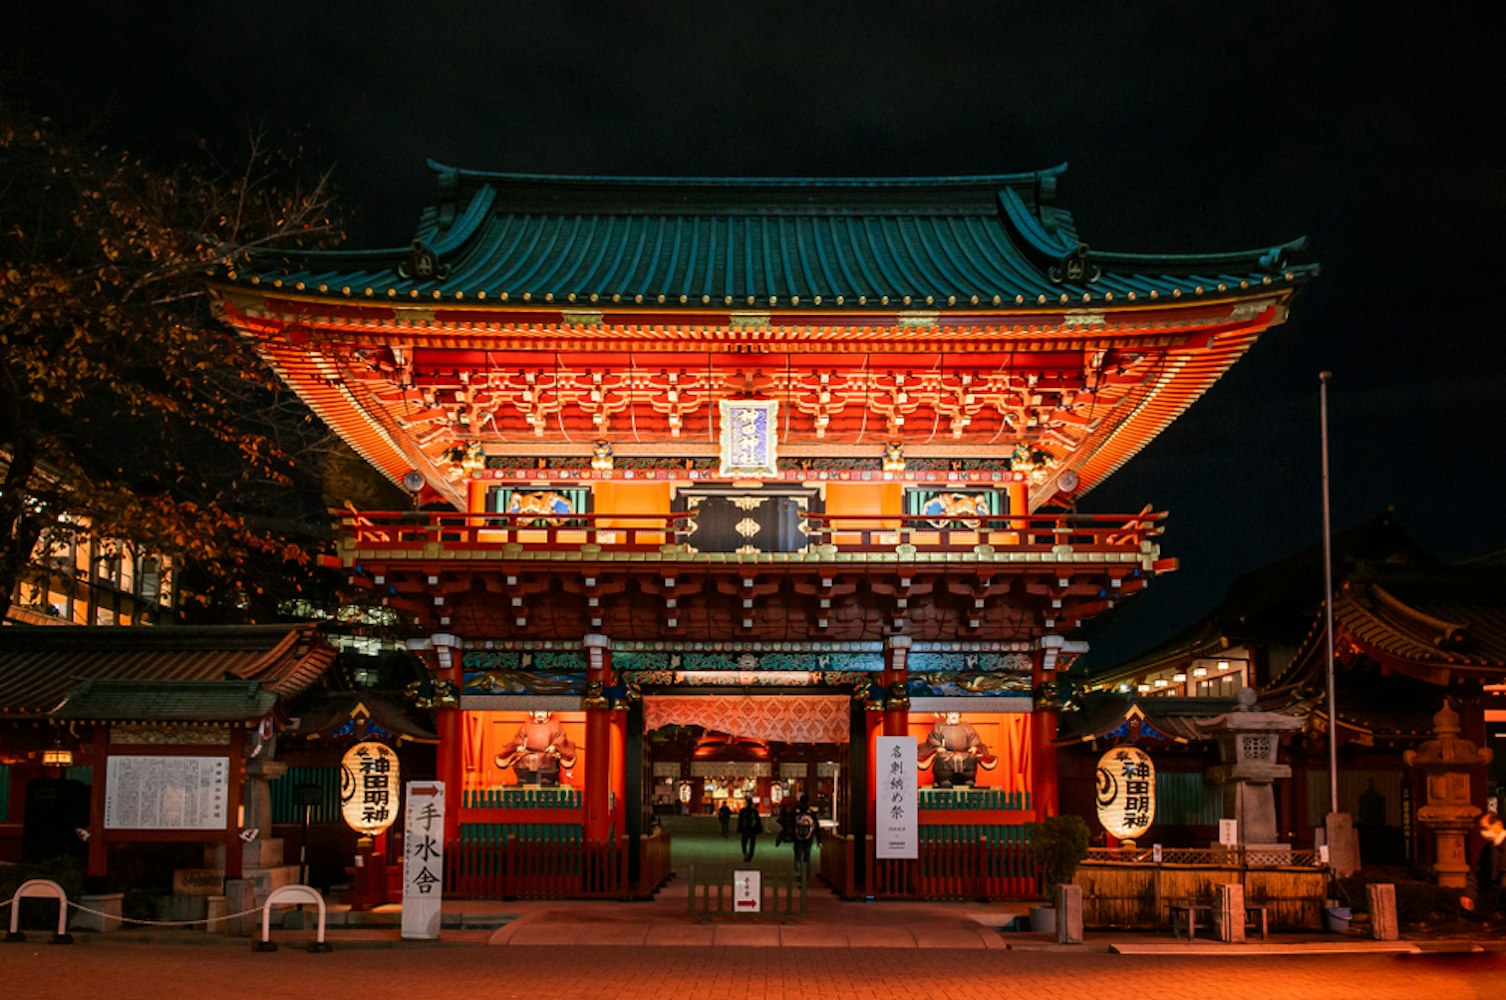 Kanda Myojin Shrine Ancient Main Entrance